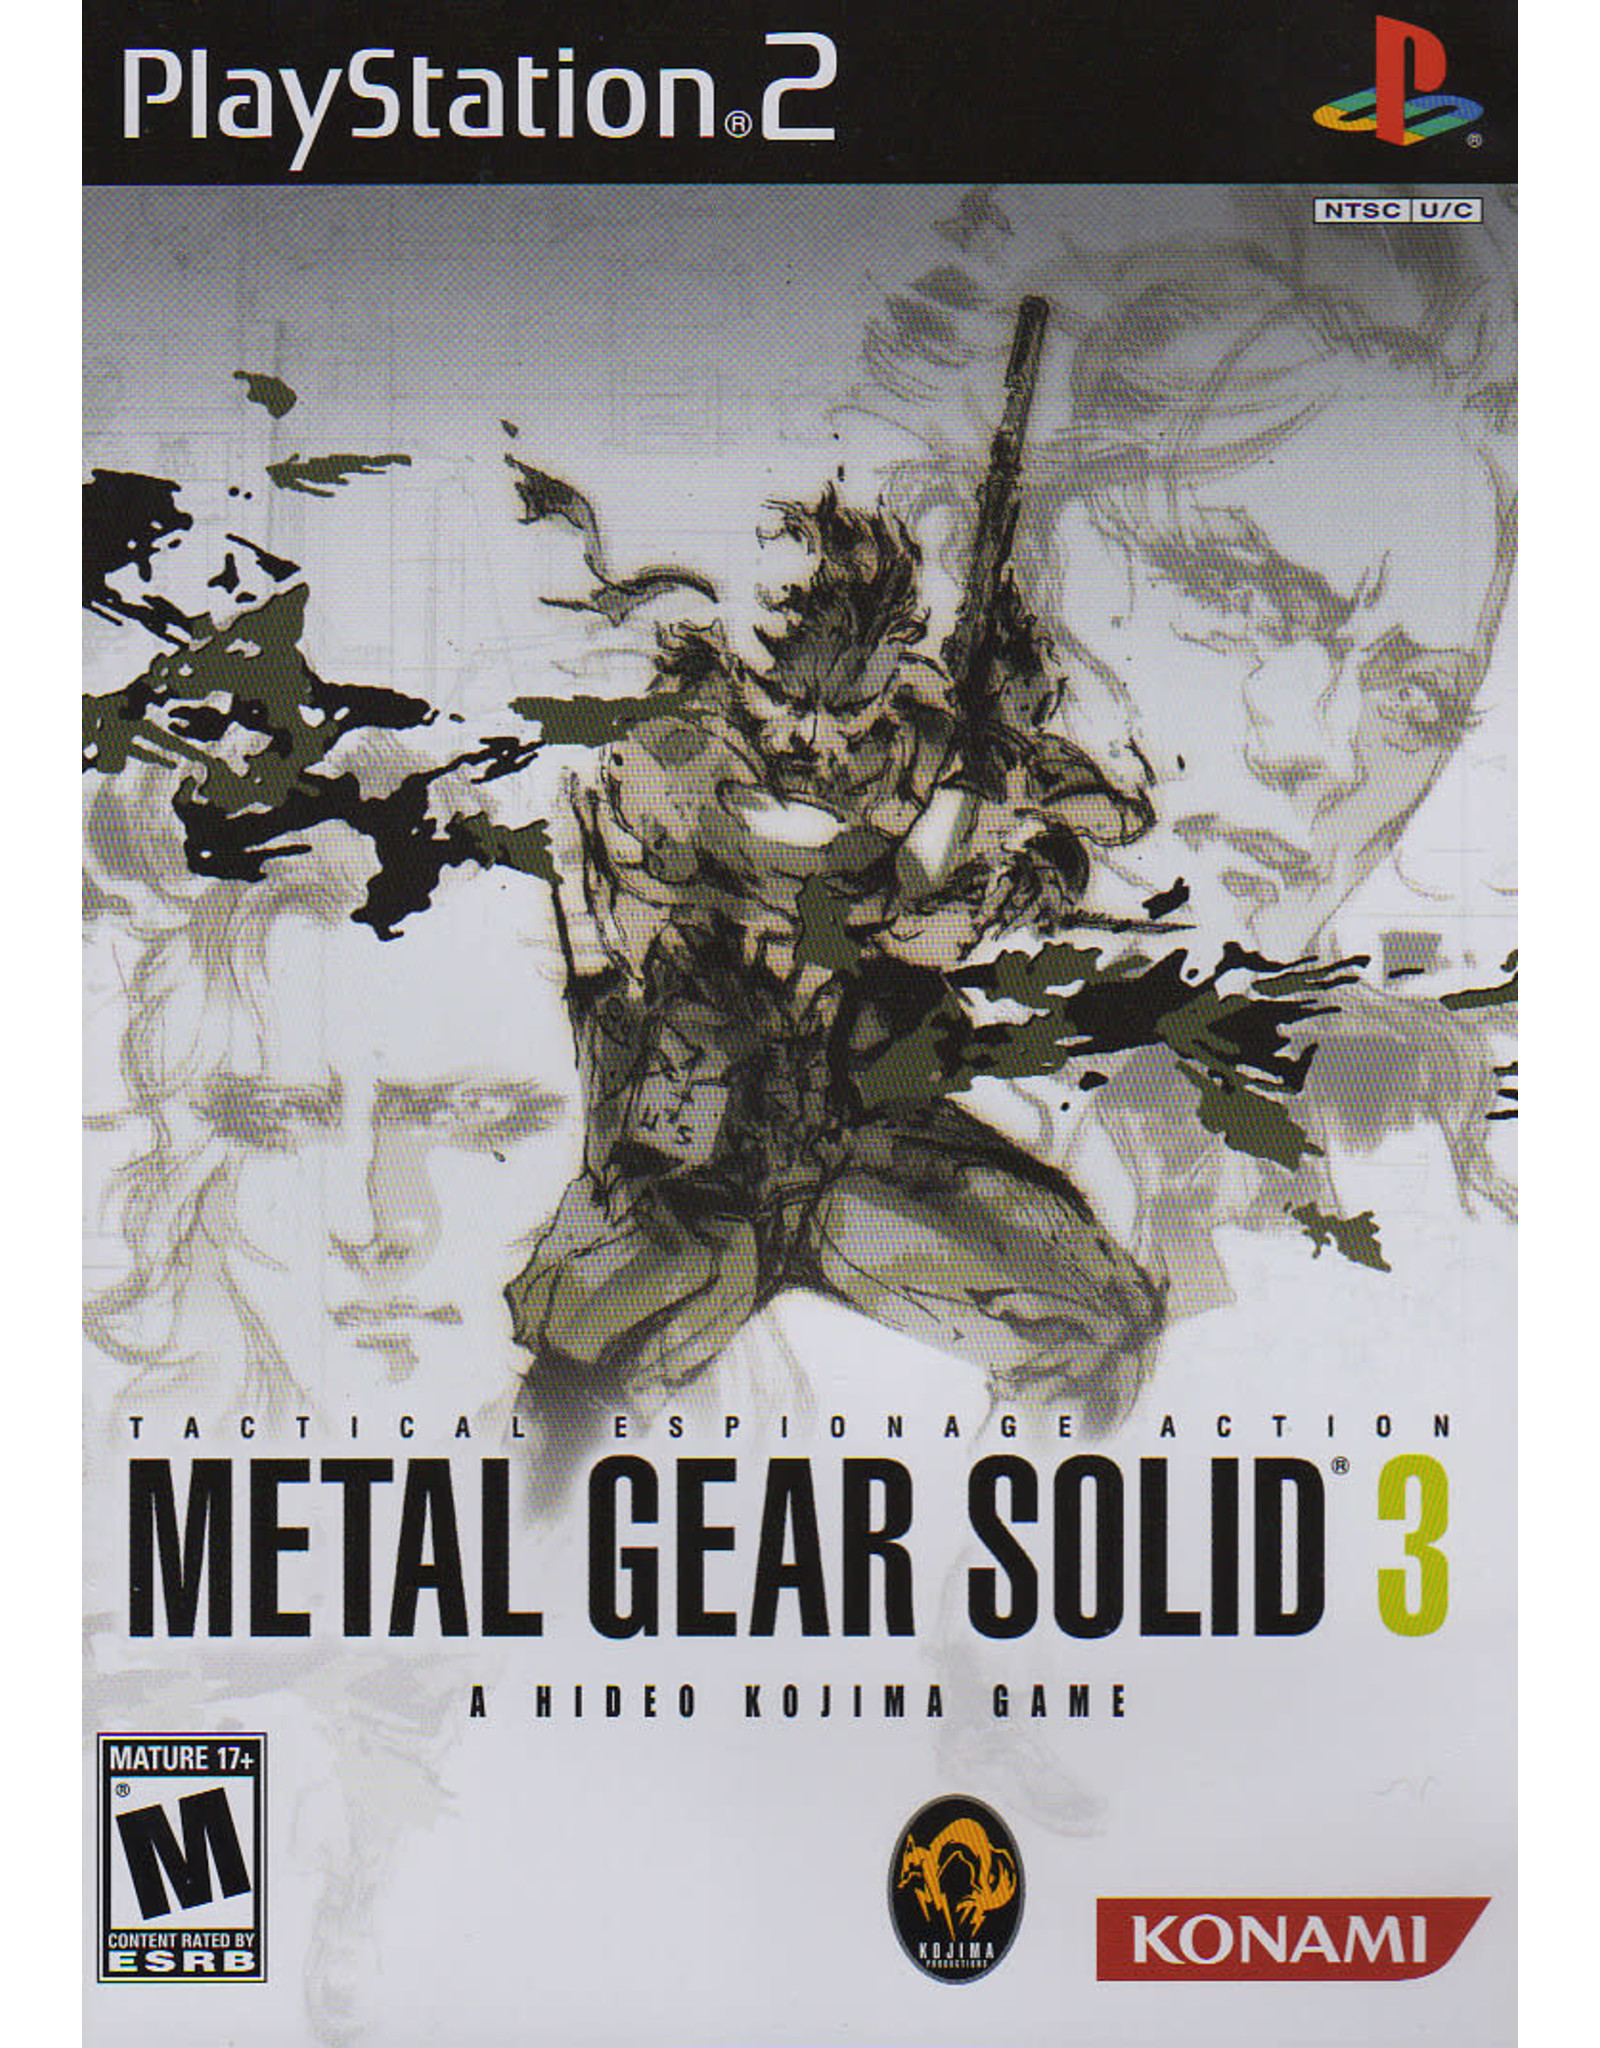 Playstation 2 Metal Gear Solid 3 (Essentials Collection Version, No Manual)